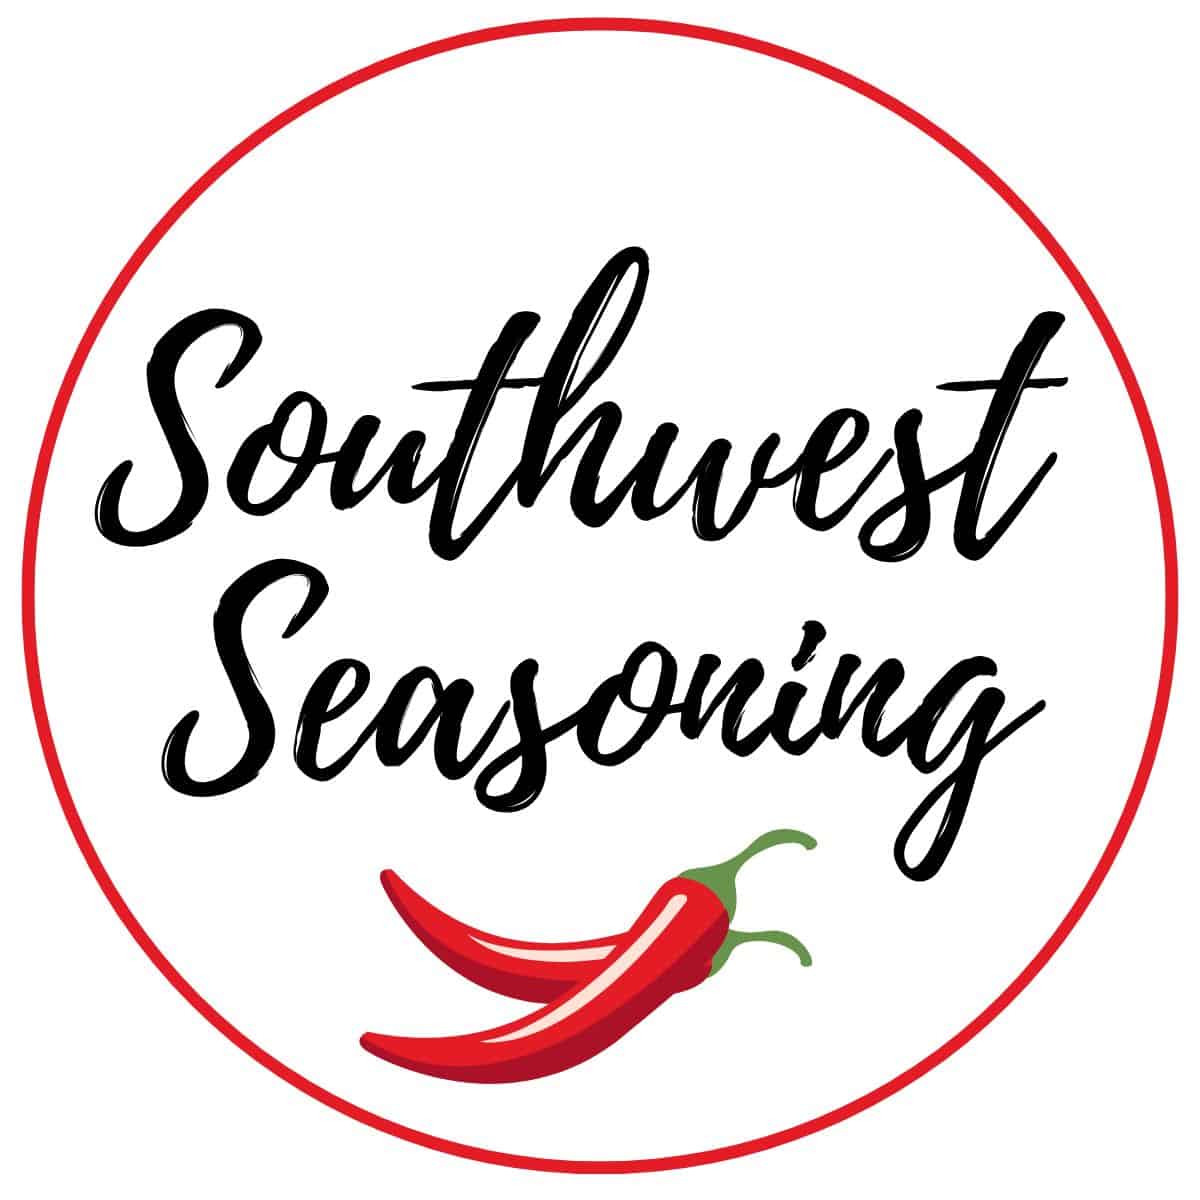 Southwest seasoning label.